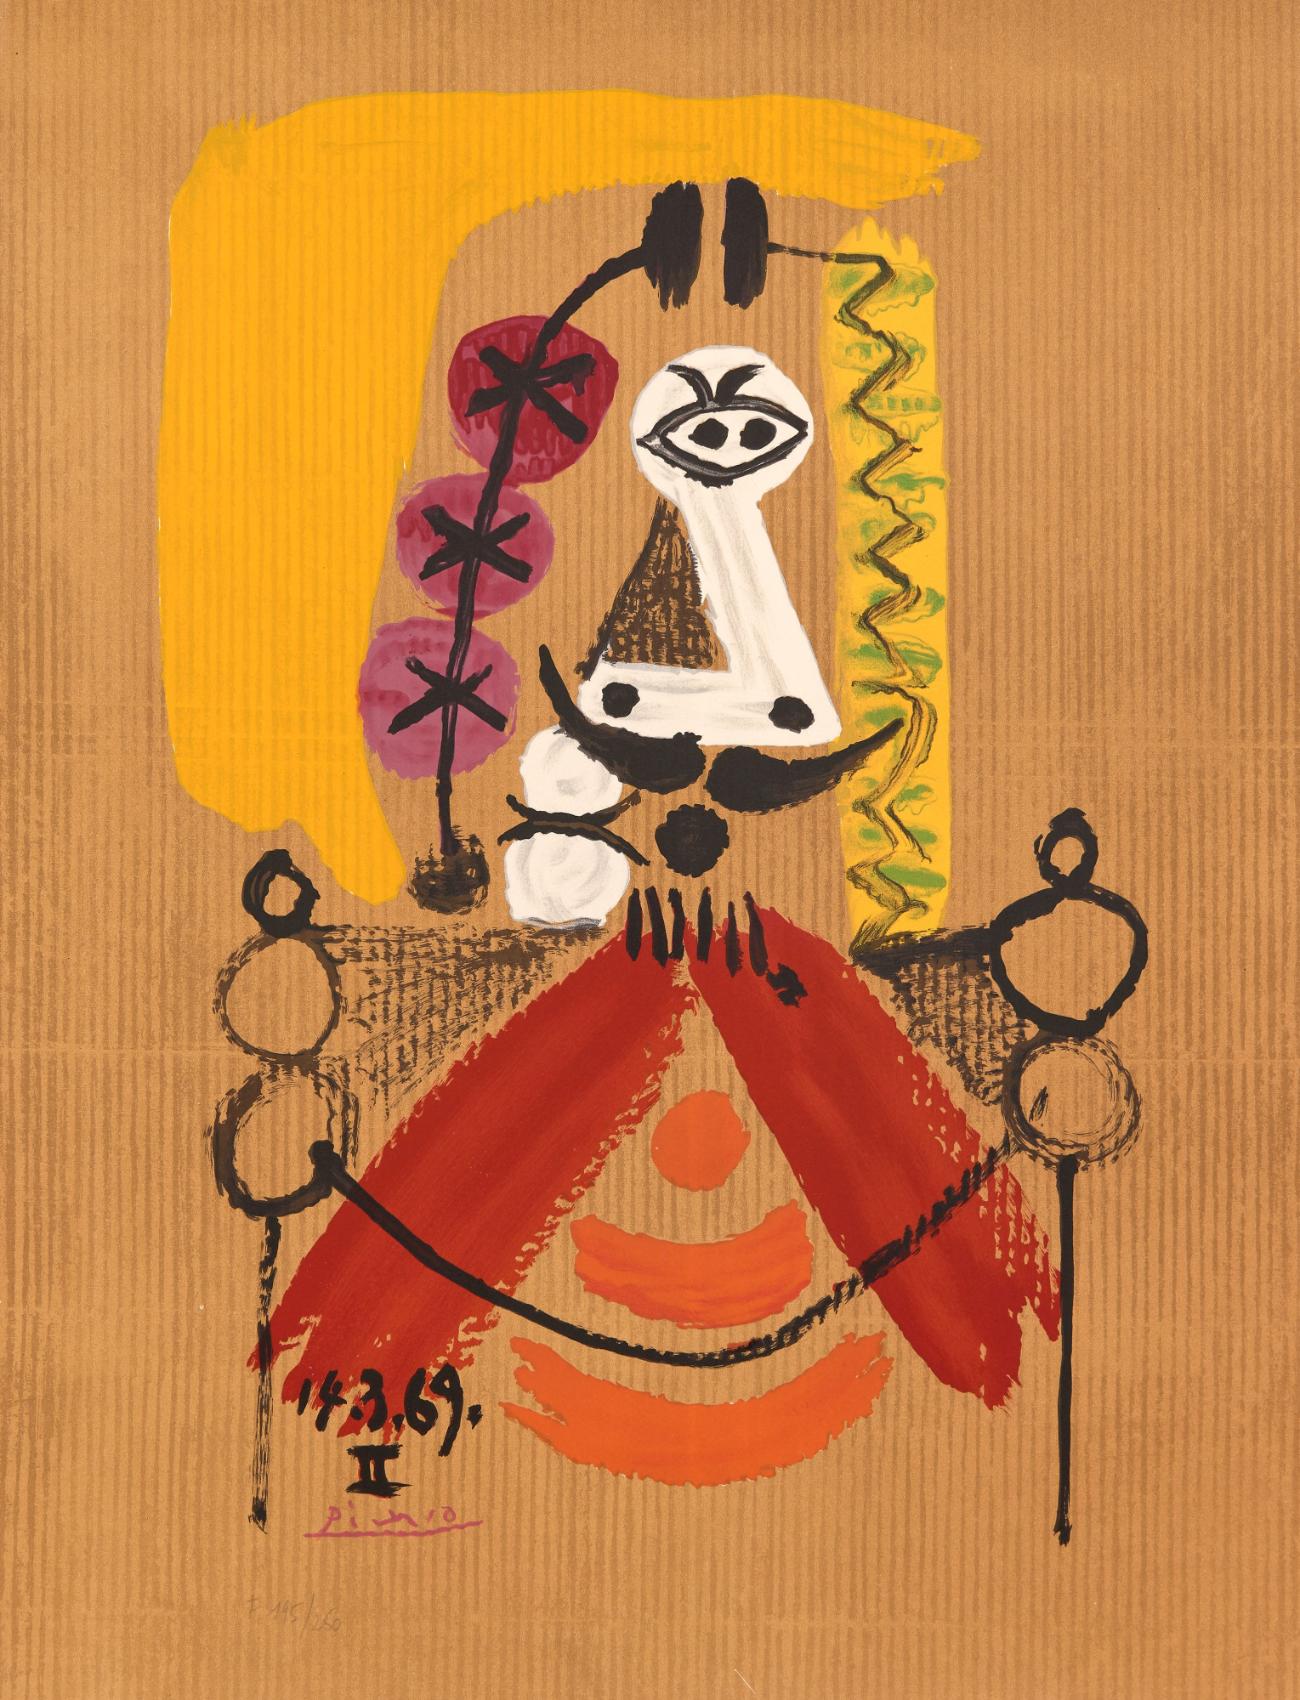 Abstract Print Pablo Picasso - Les portraits imaginaires : une assiette